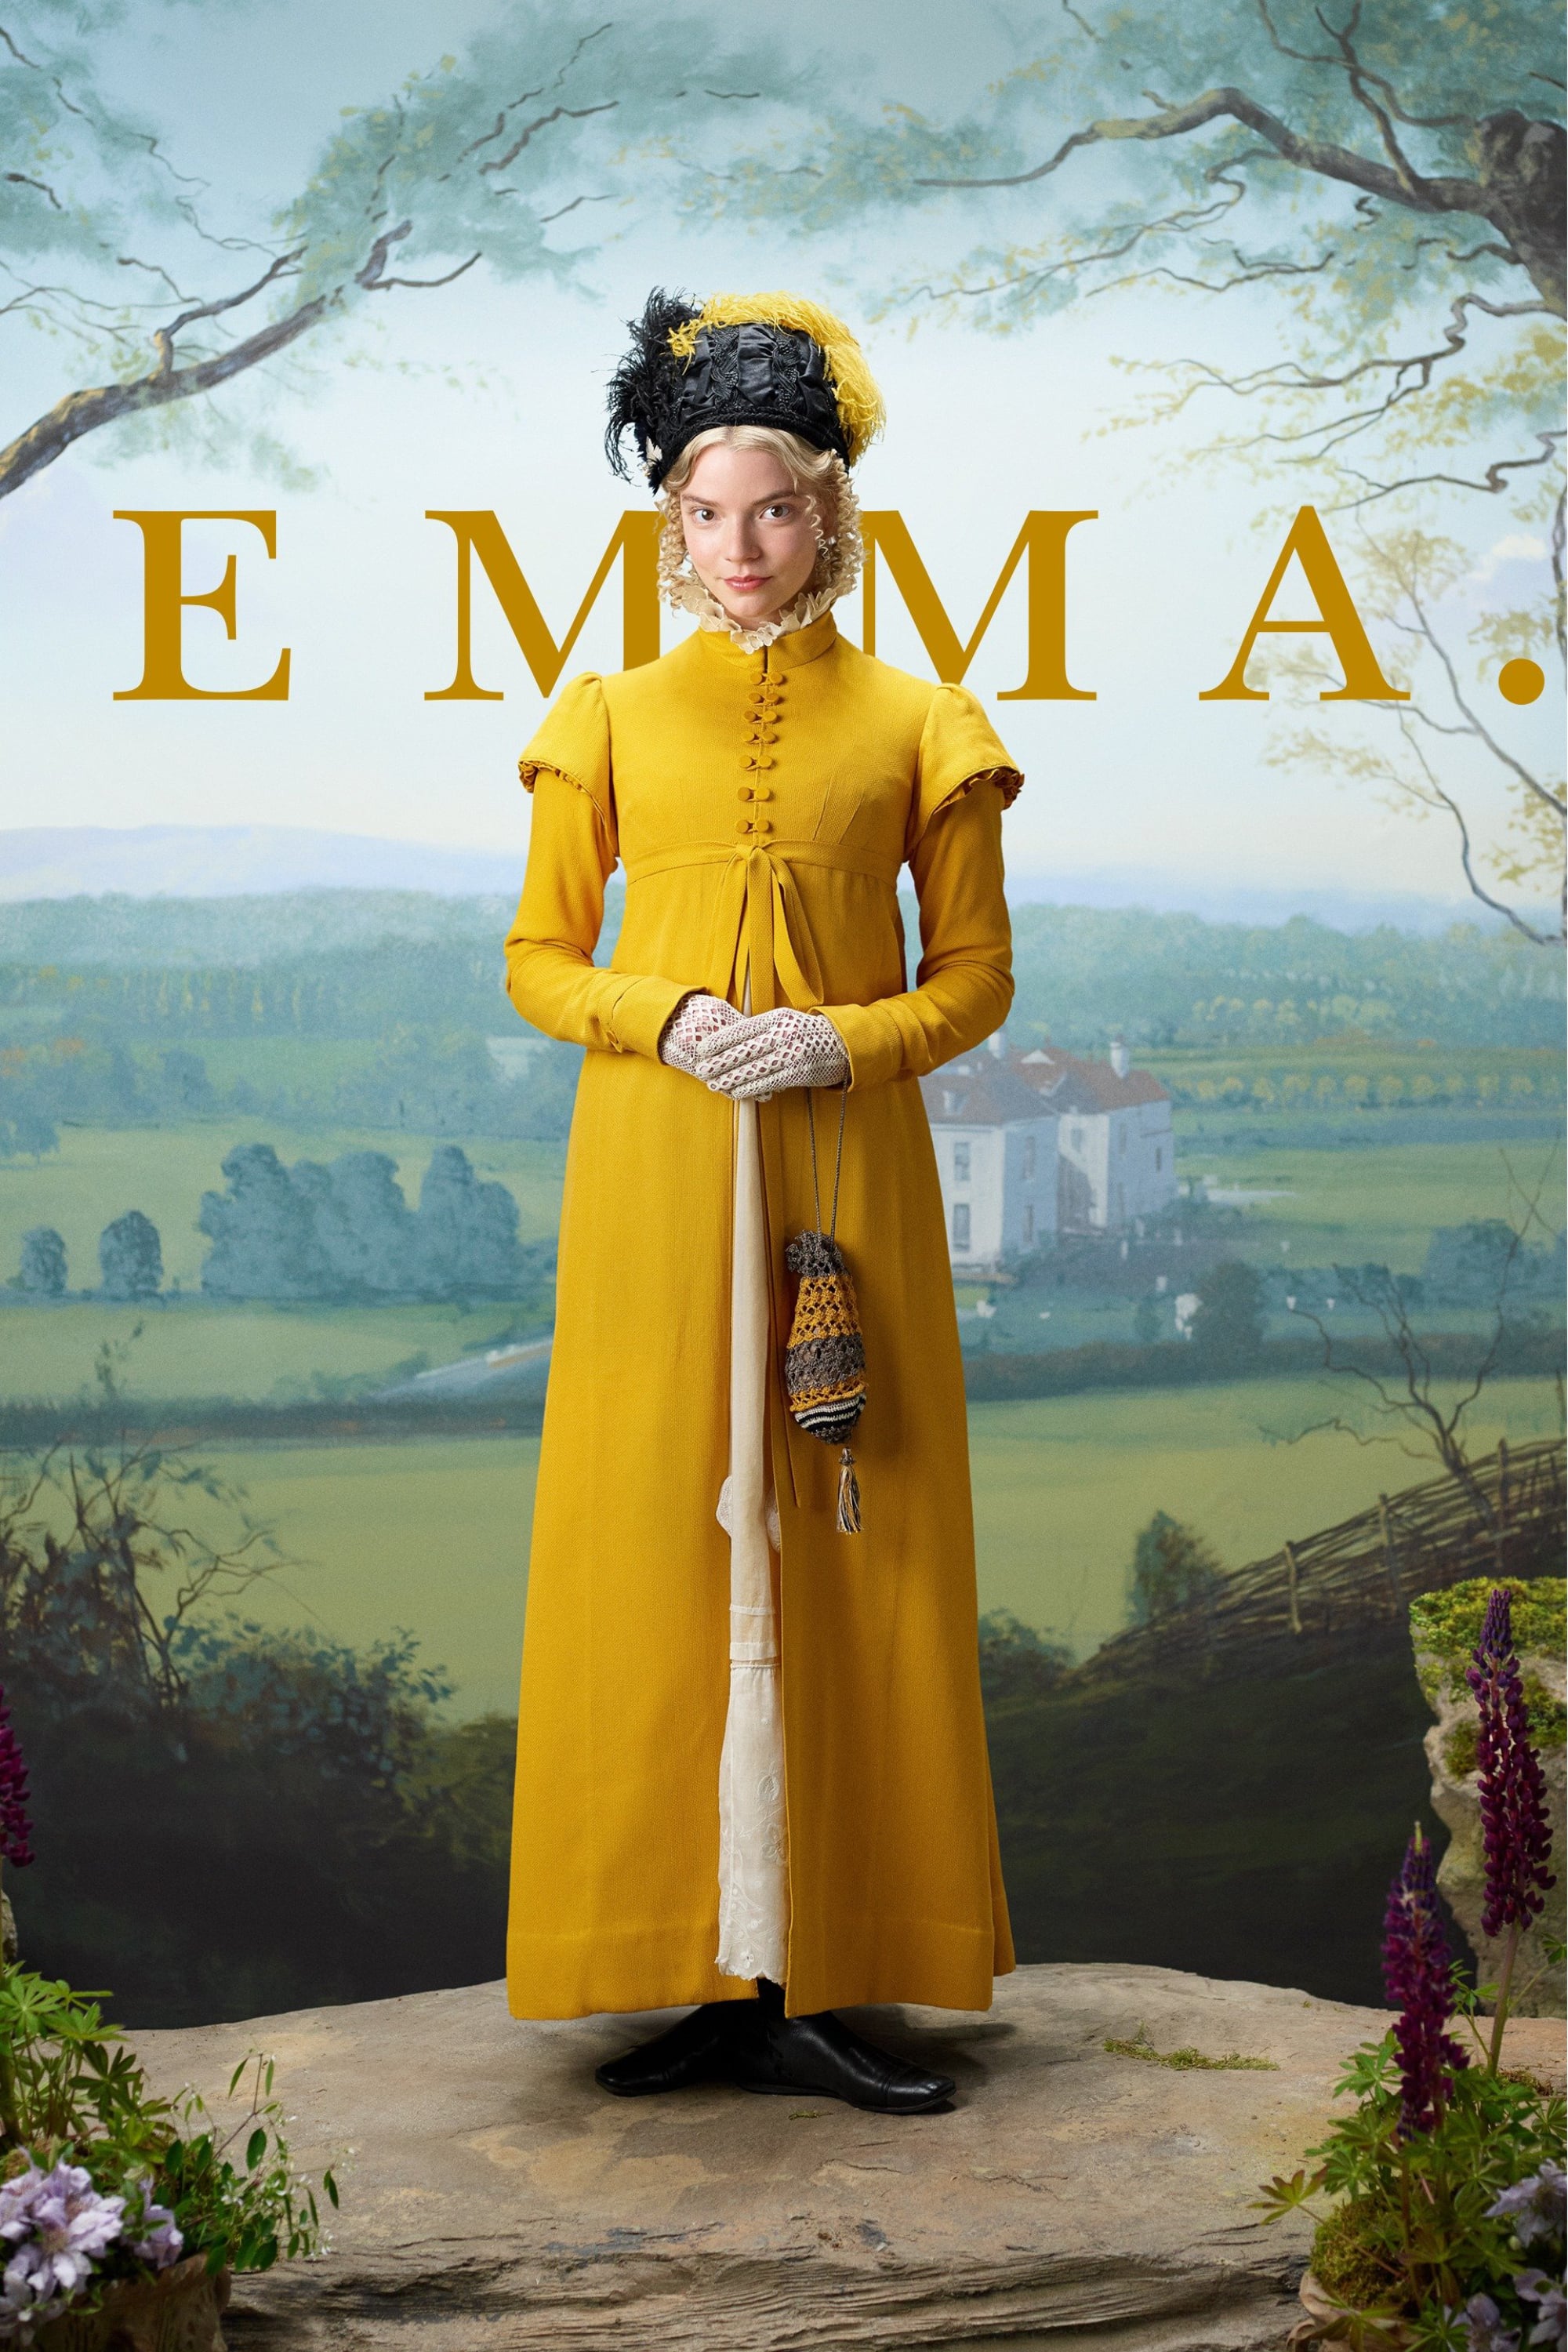 Plakat von "Emma."